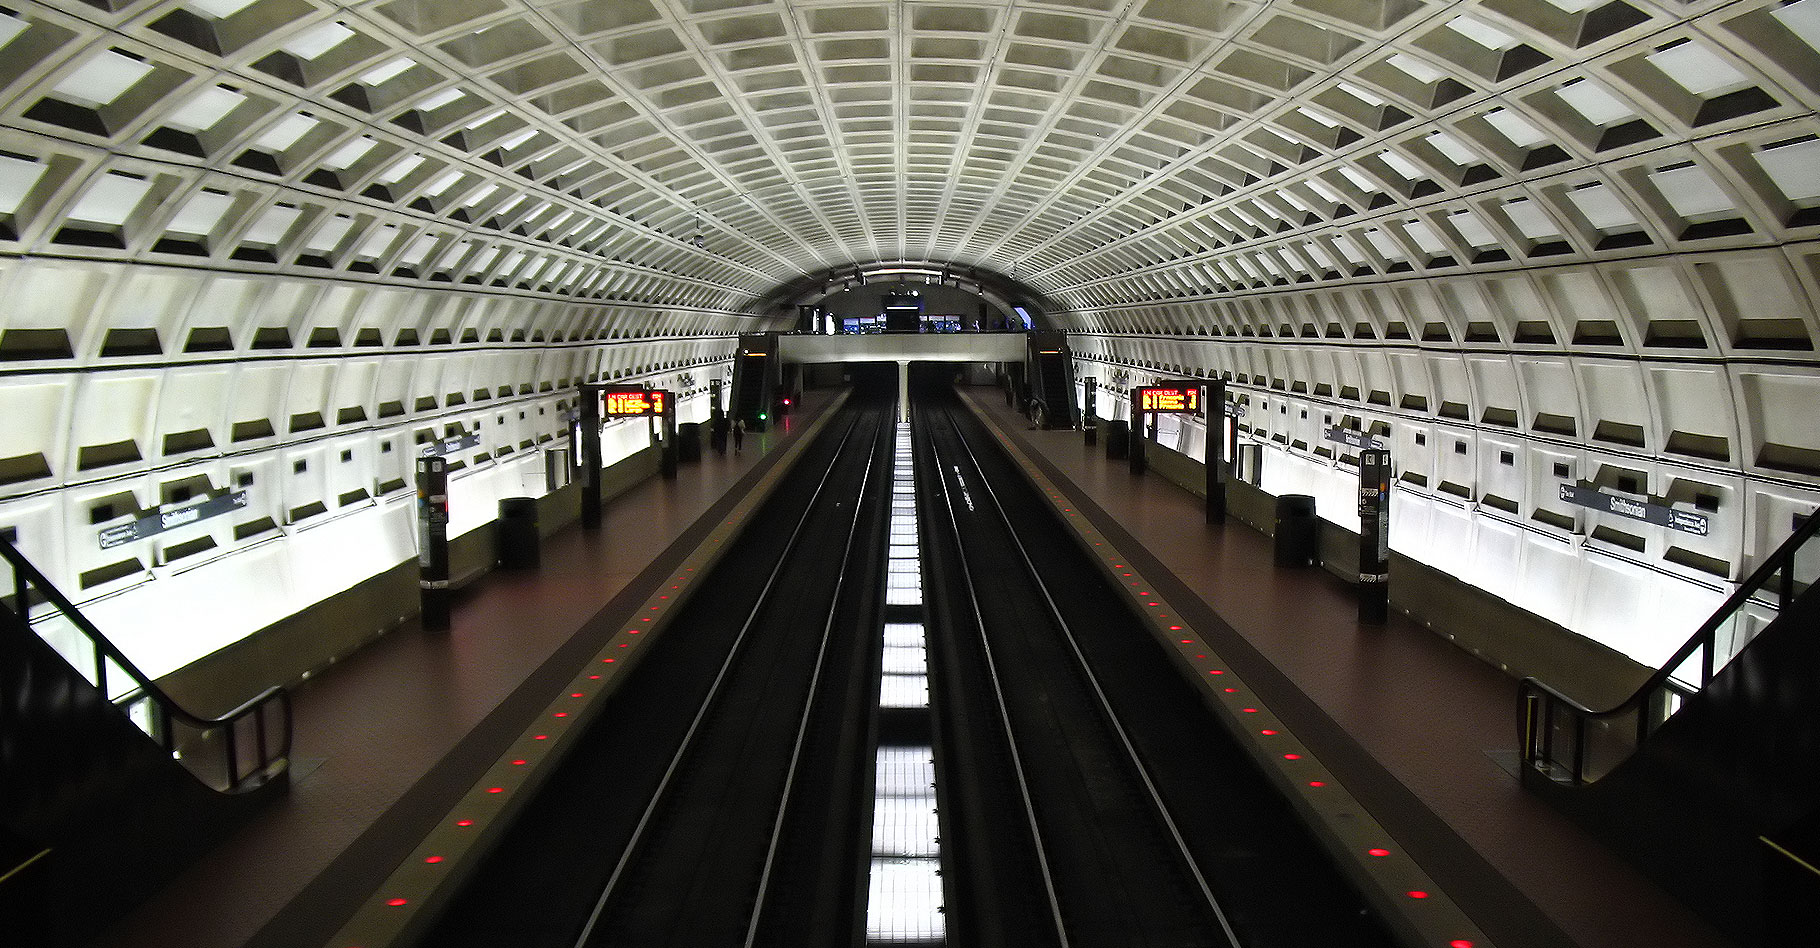 Le magnifique plafond elliptique&nbsp;d'un quai de métro. © Phil King, Flickr, CC by-nc&nbsp;2.0